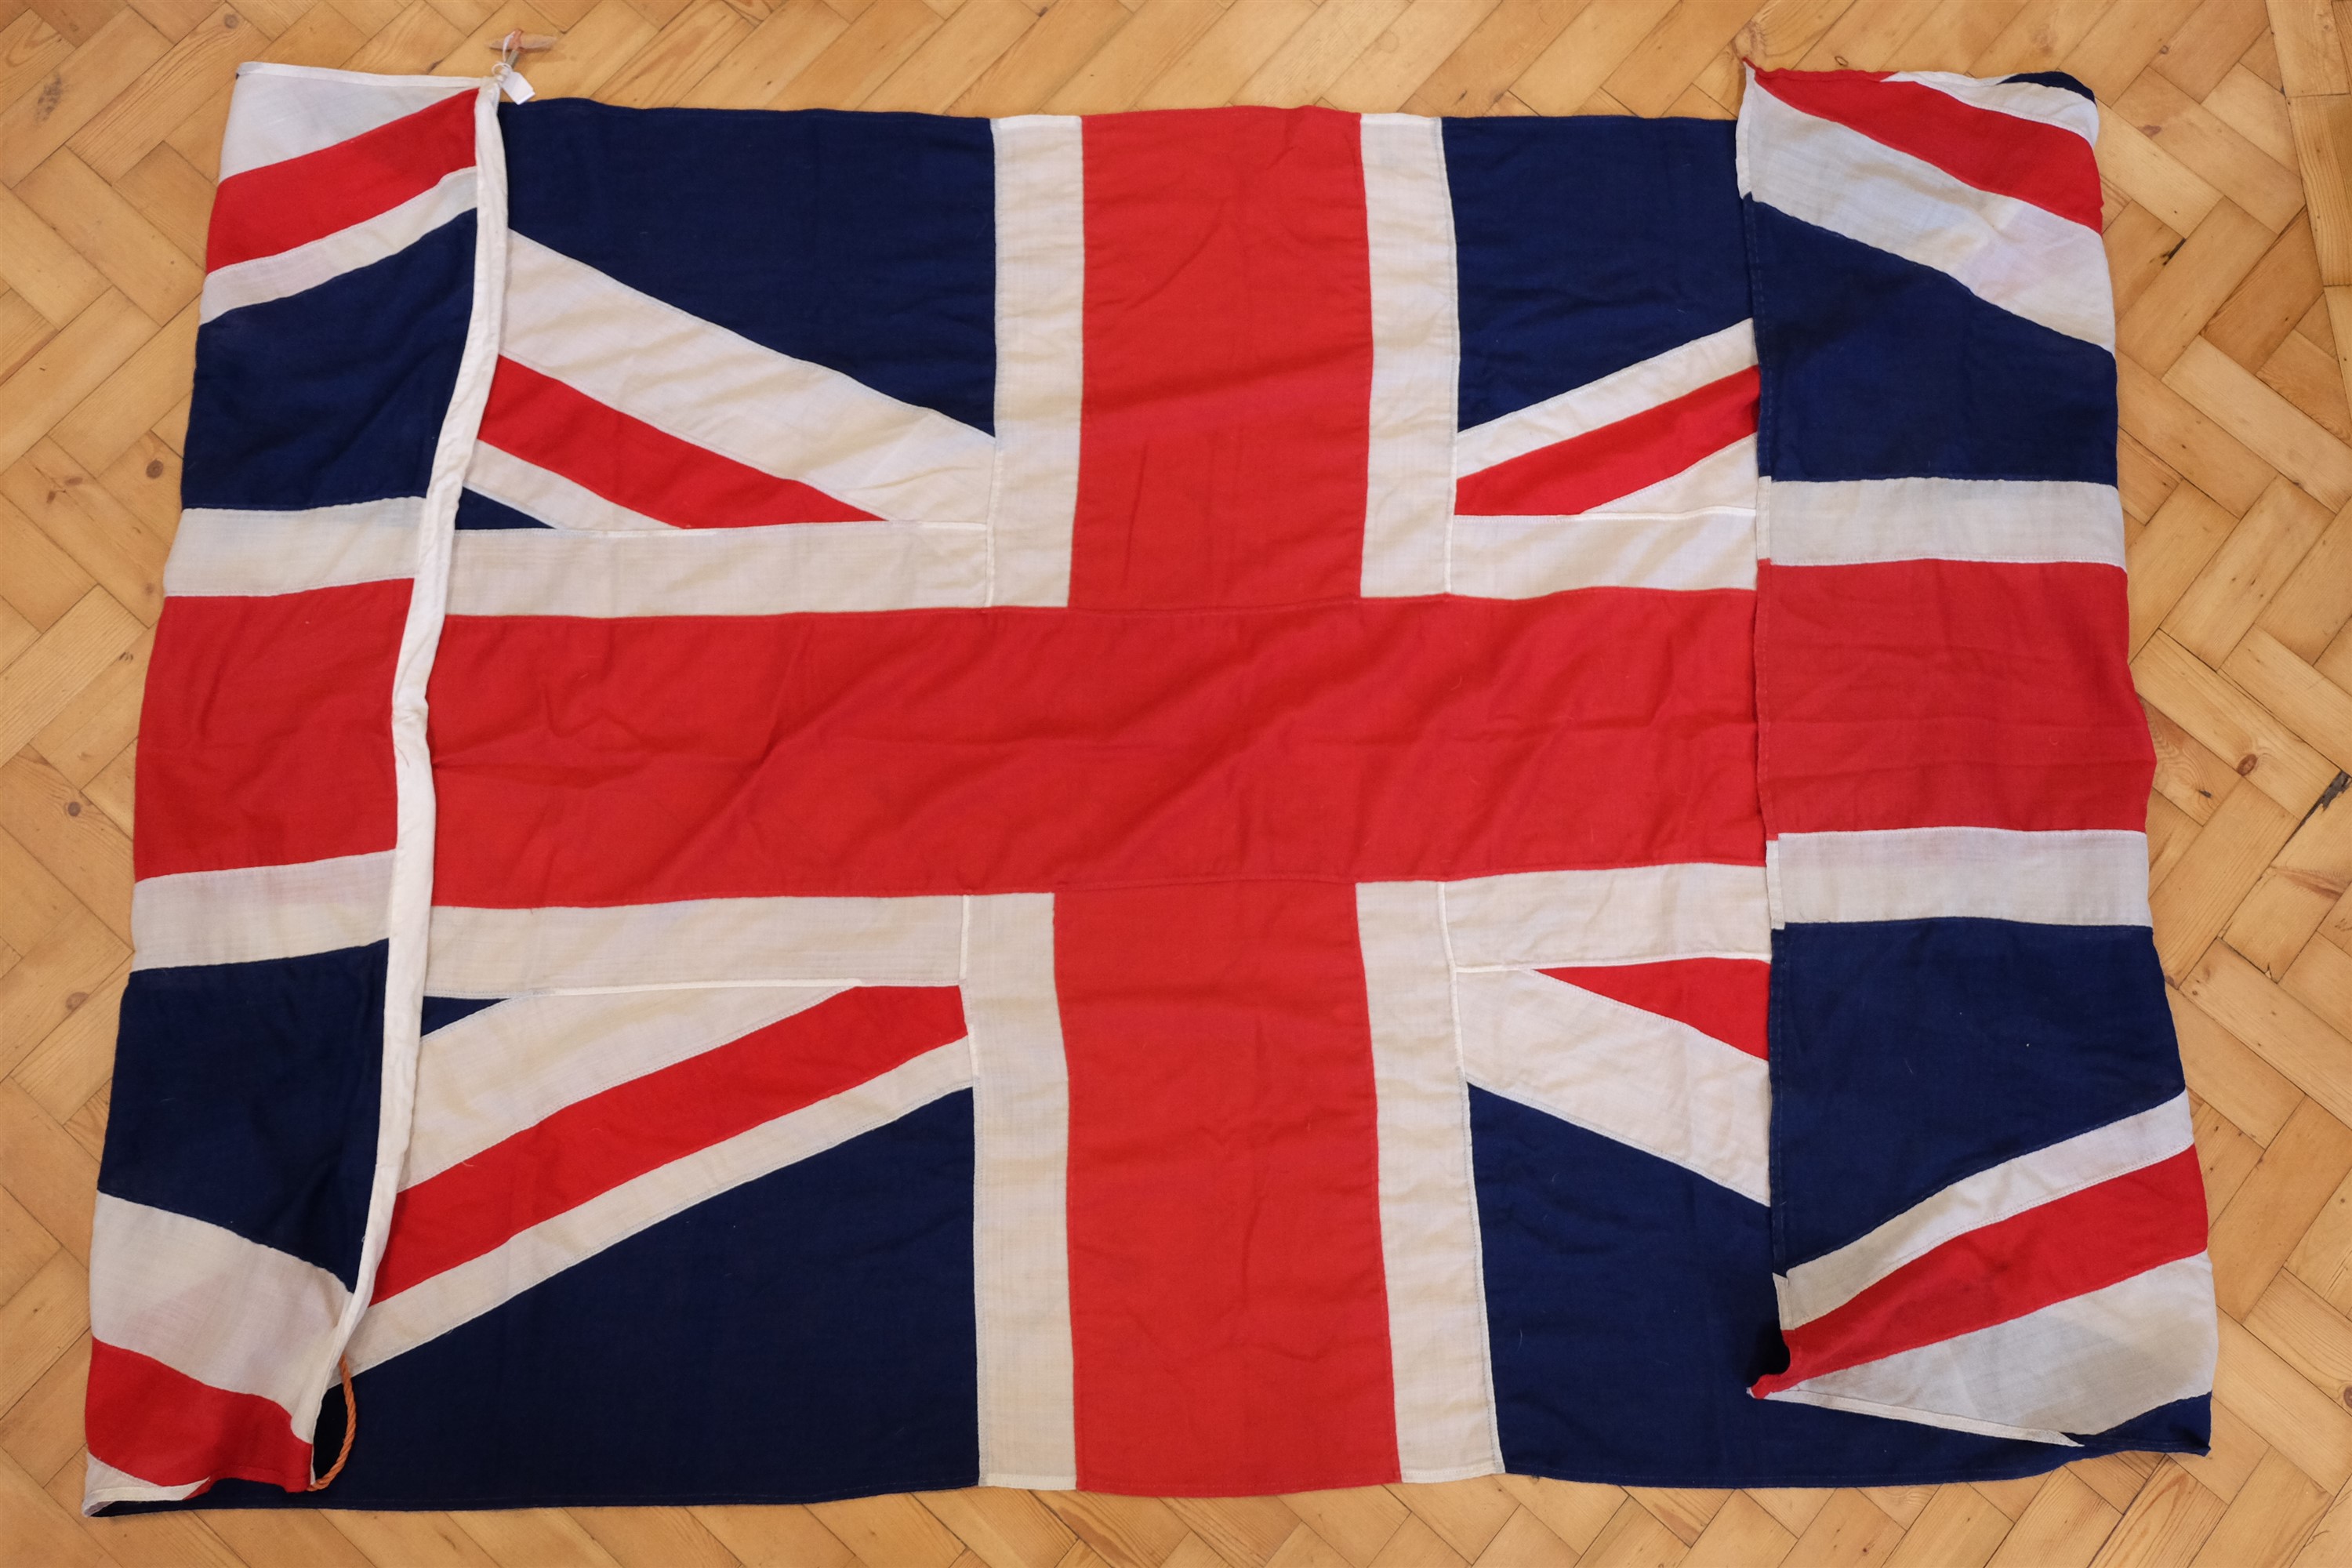 A vintage Union Jack flag, 270 x 140 cm - Image 2 of 2